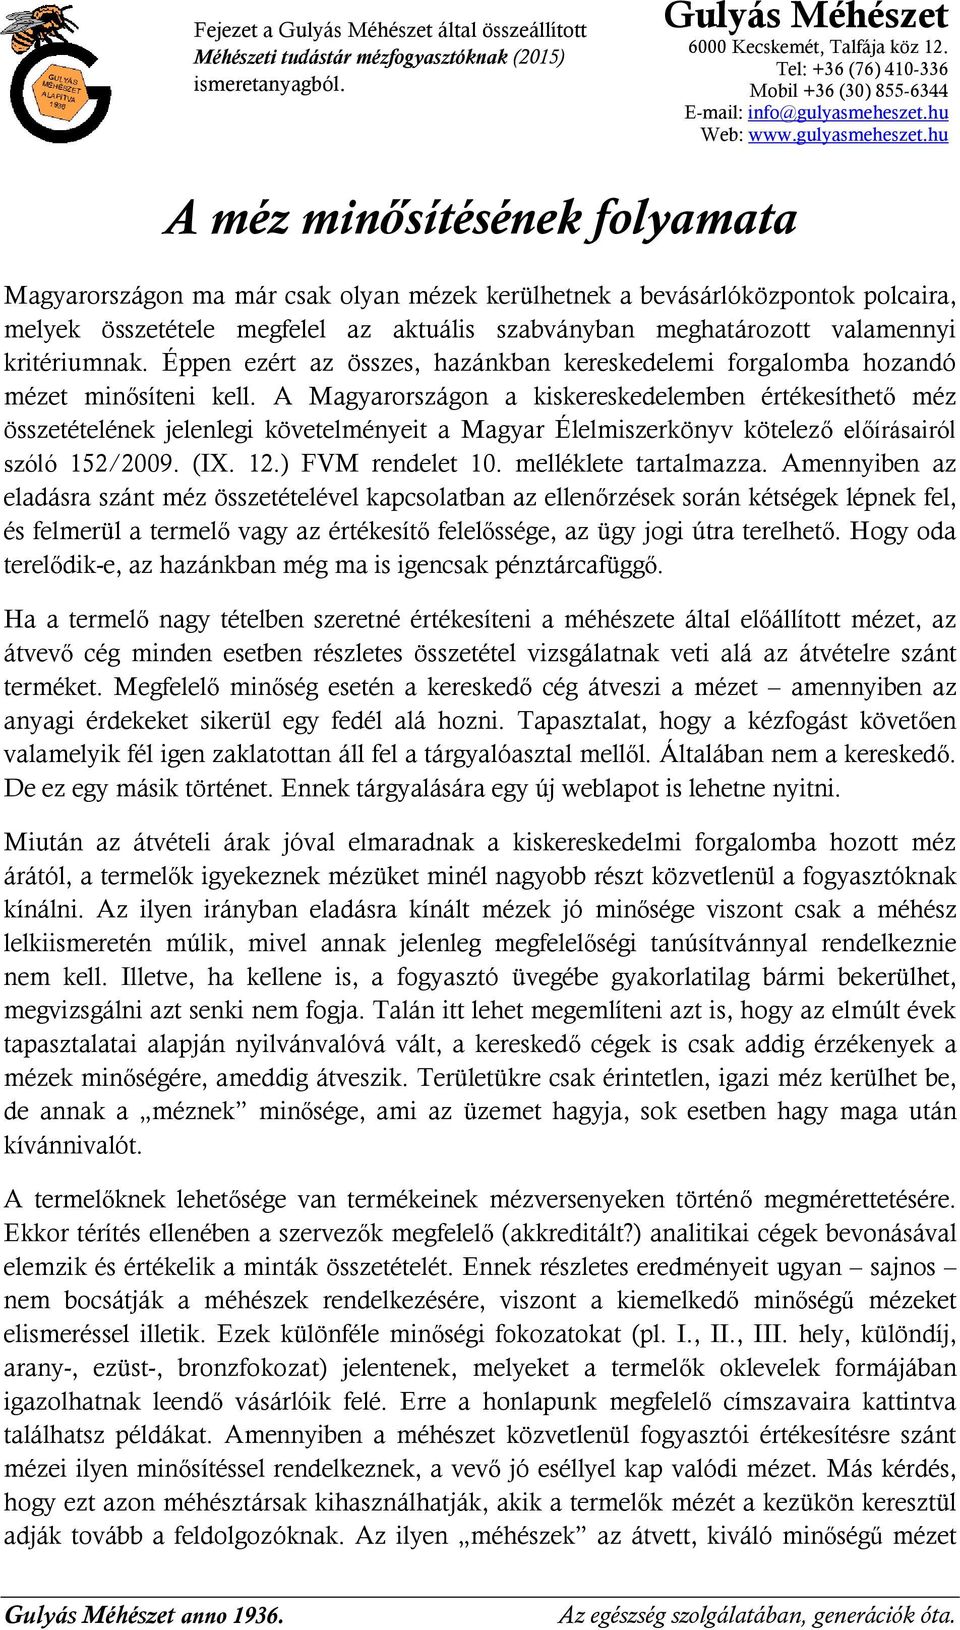 A Magyarországon a kiskereskedelemben értékesíthető méz összetételének jelenlegi követelményeit a Magyar Élelmiszerkönyv kötelező előírásairól szóló 152/2009. (IX. 12.) FVM rendelet 10.